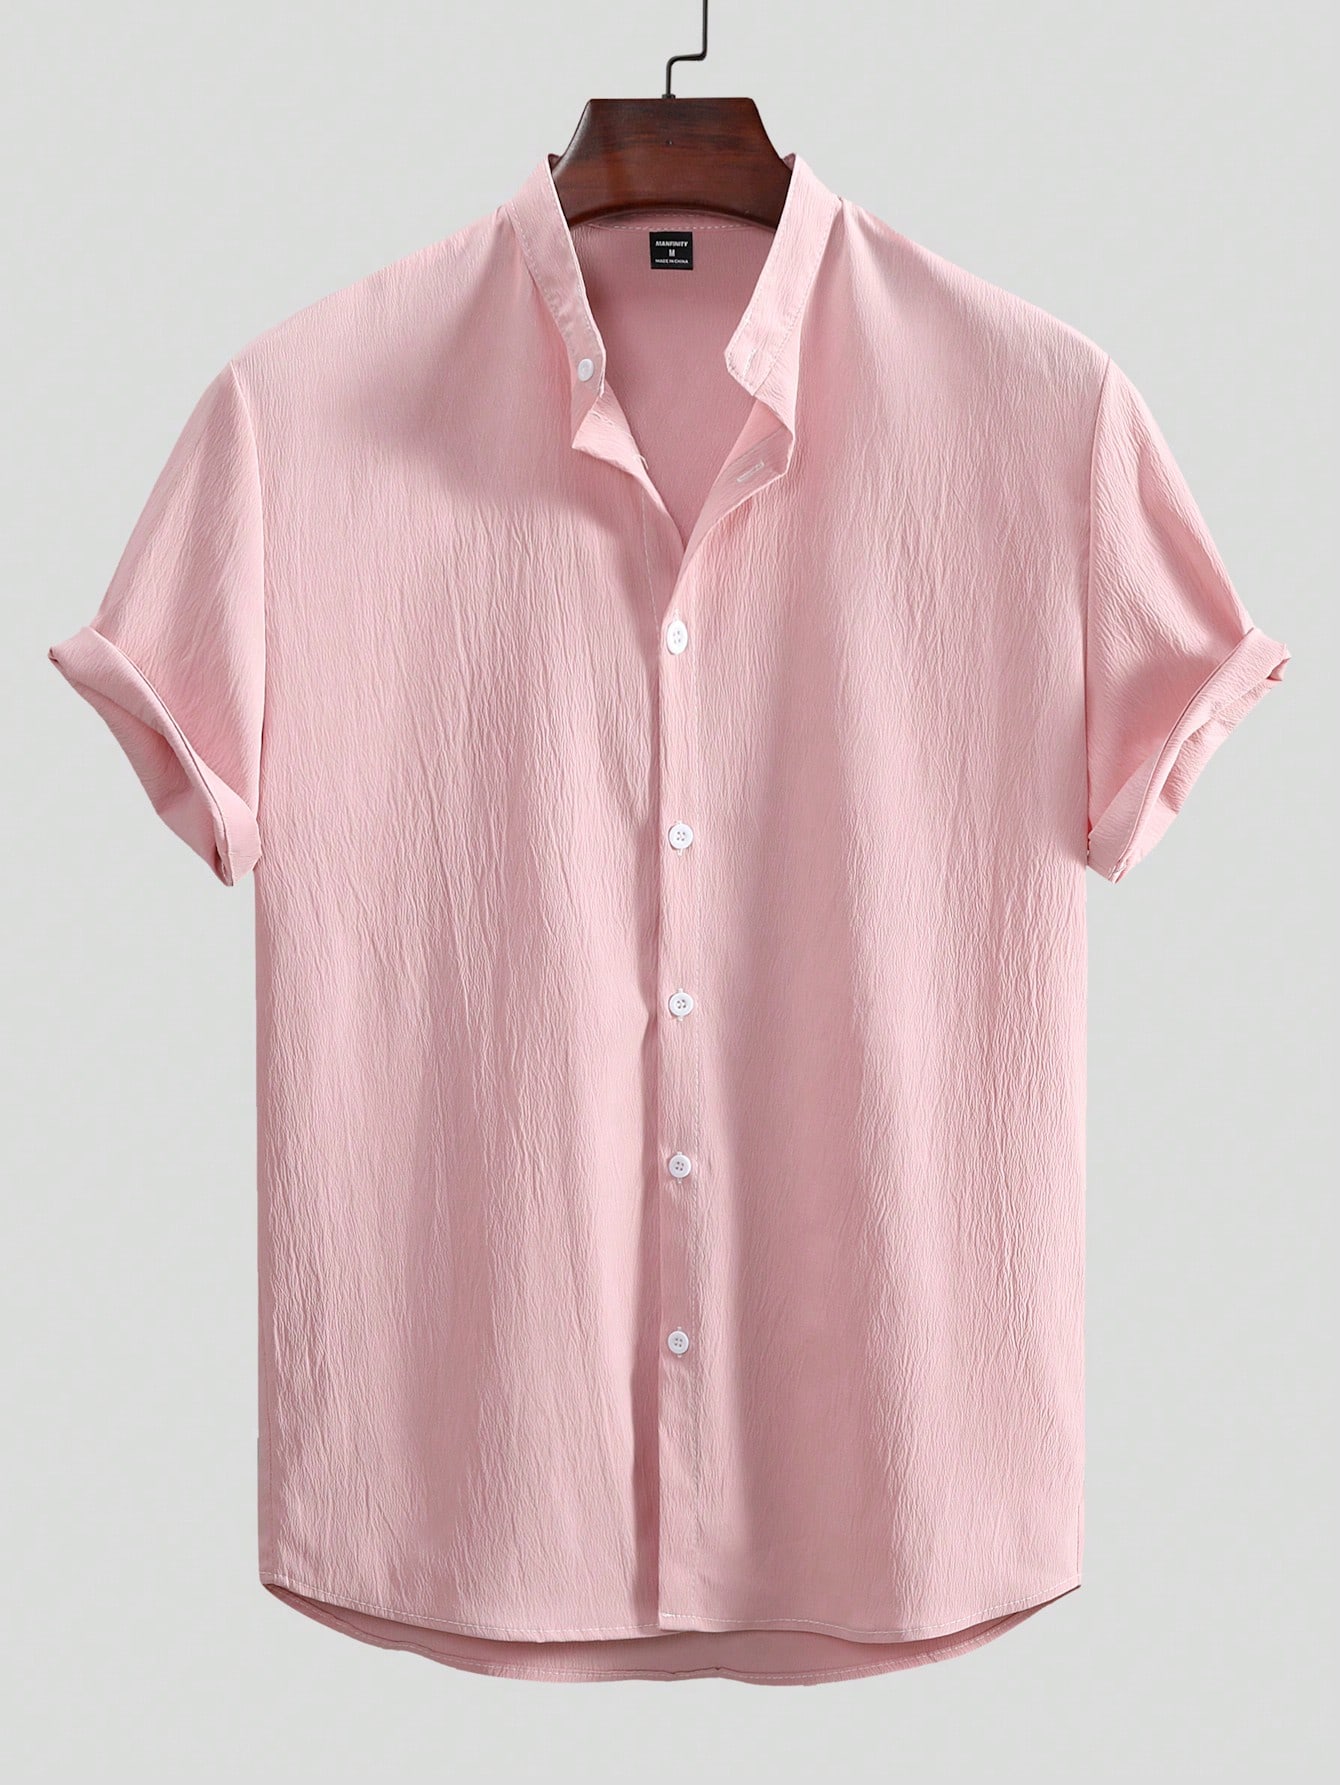 Мужская текстурированная рубашка с коротким рукавом Manfinity Homme на пуговицах спереди, розовый